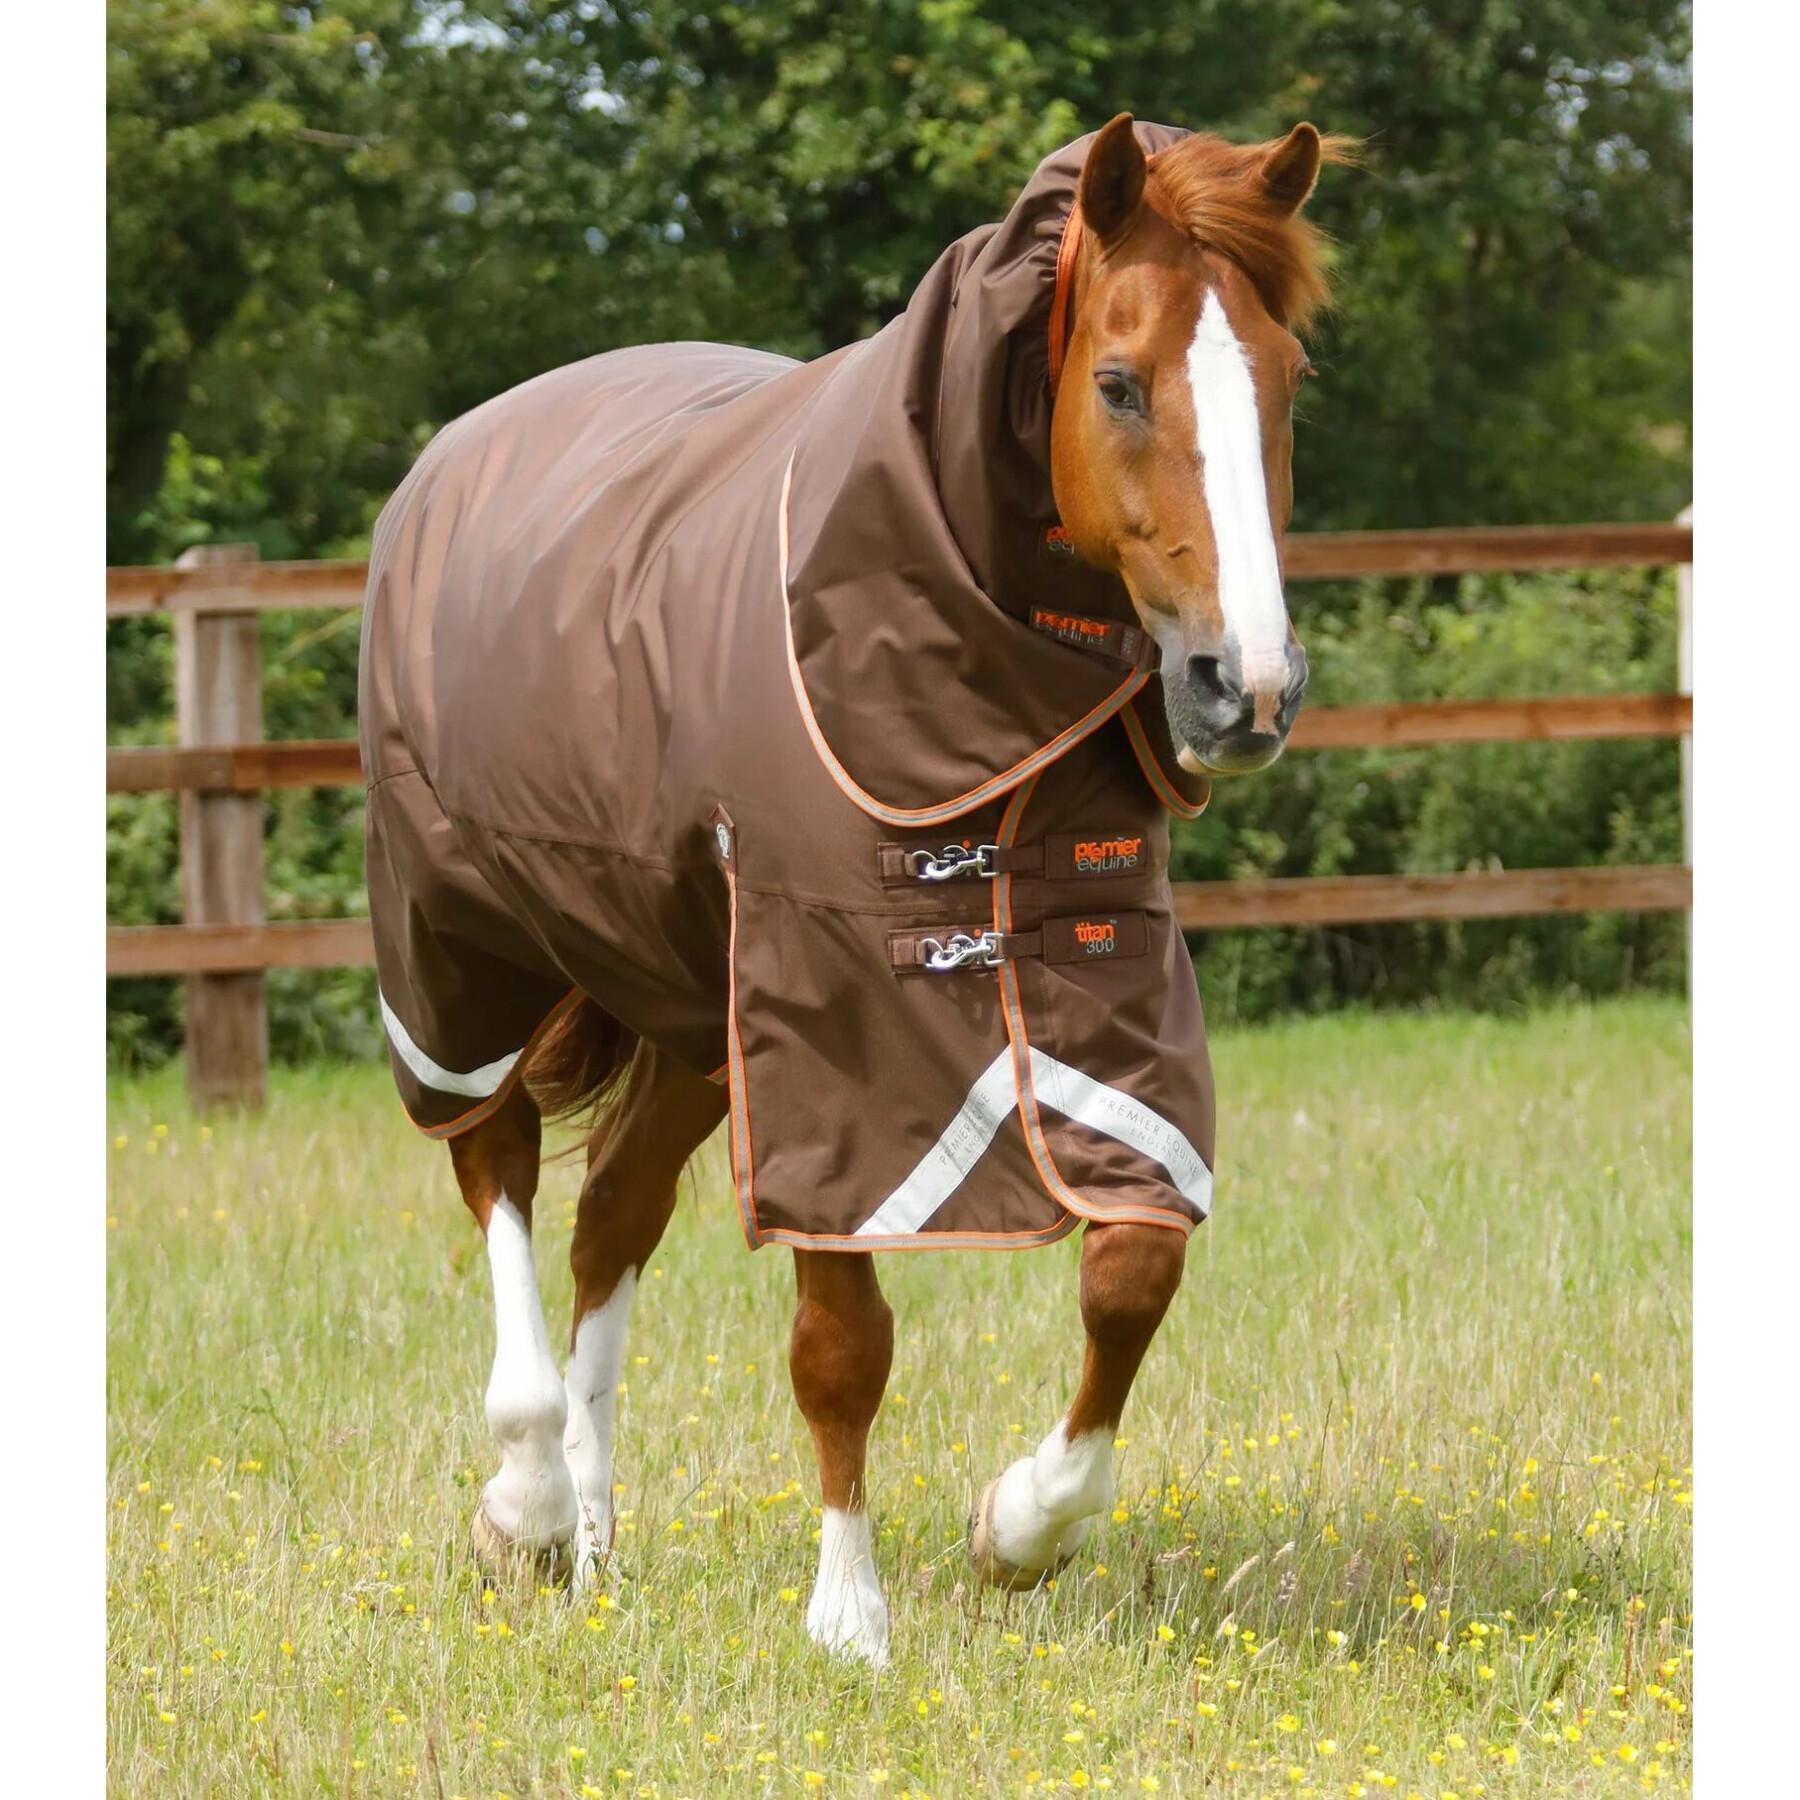 Manta para cavalo ao ar livre com cobertura de pescoço Premier Equine Titan 300 g